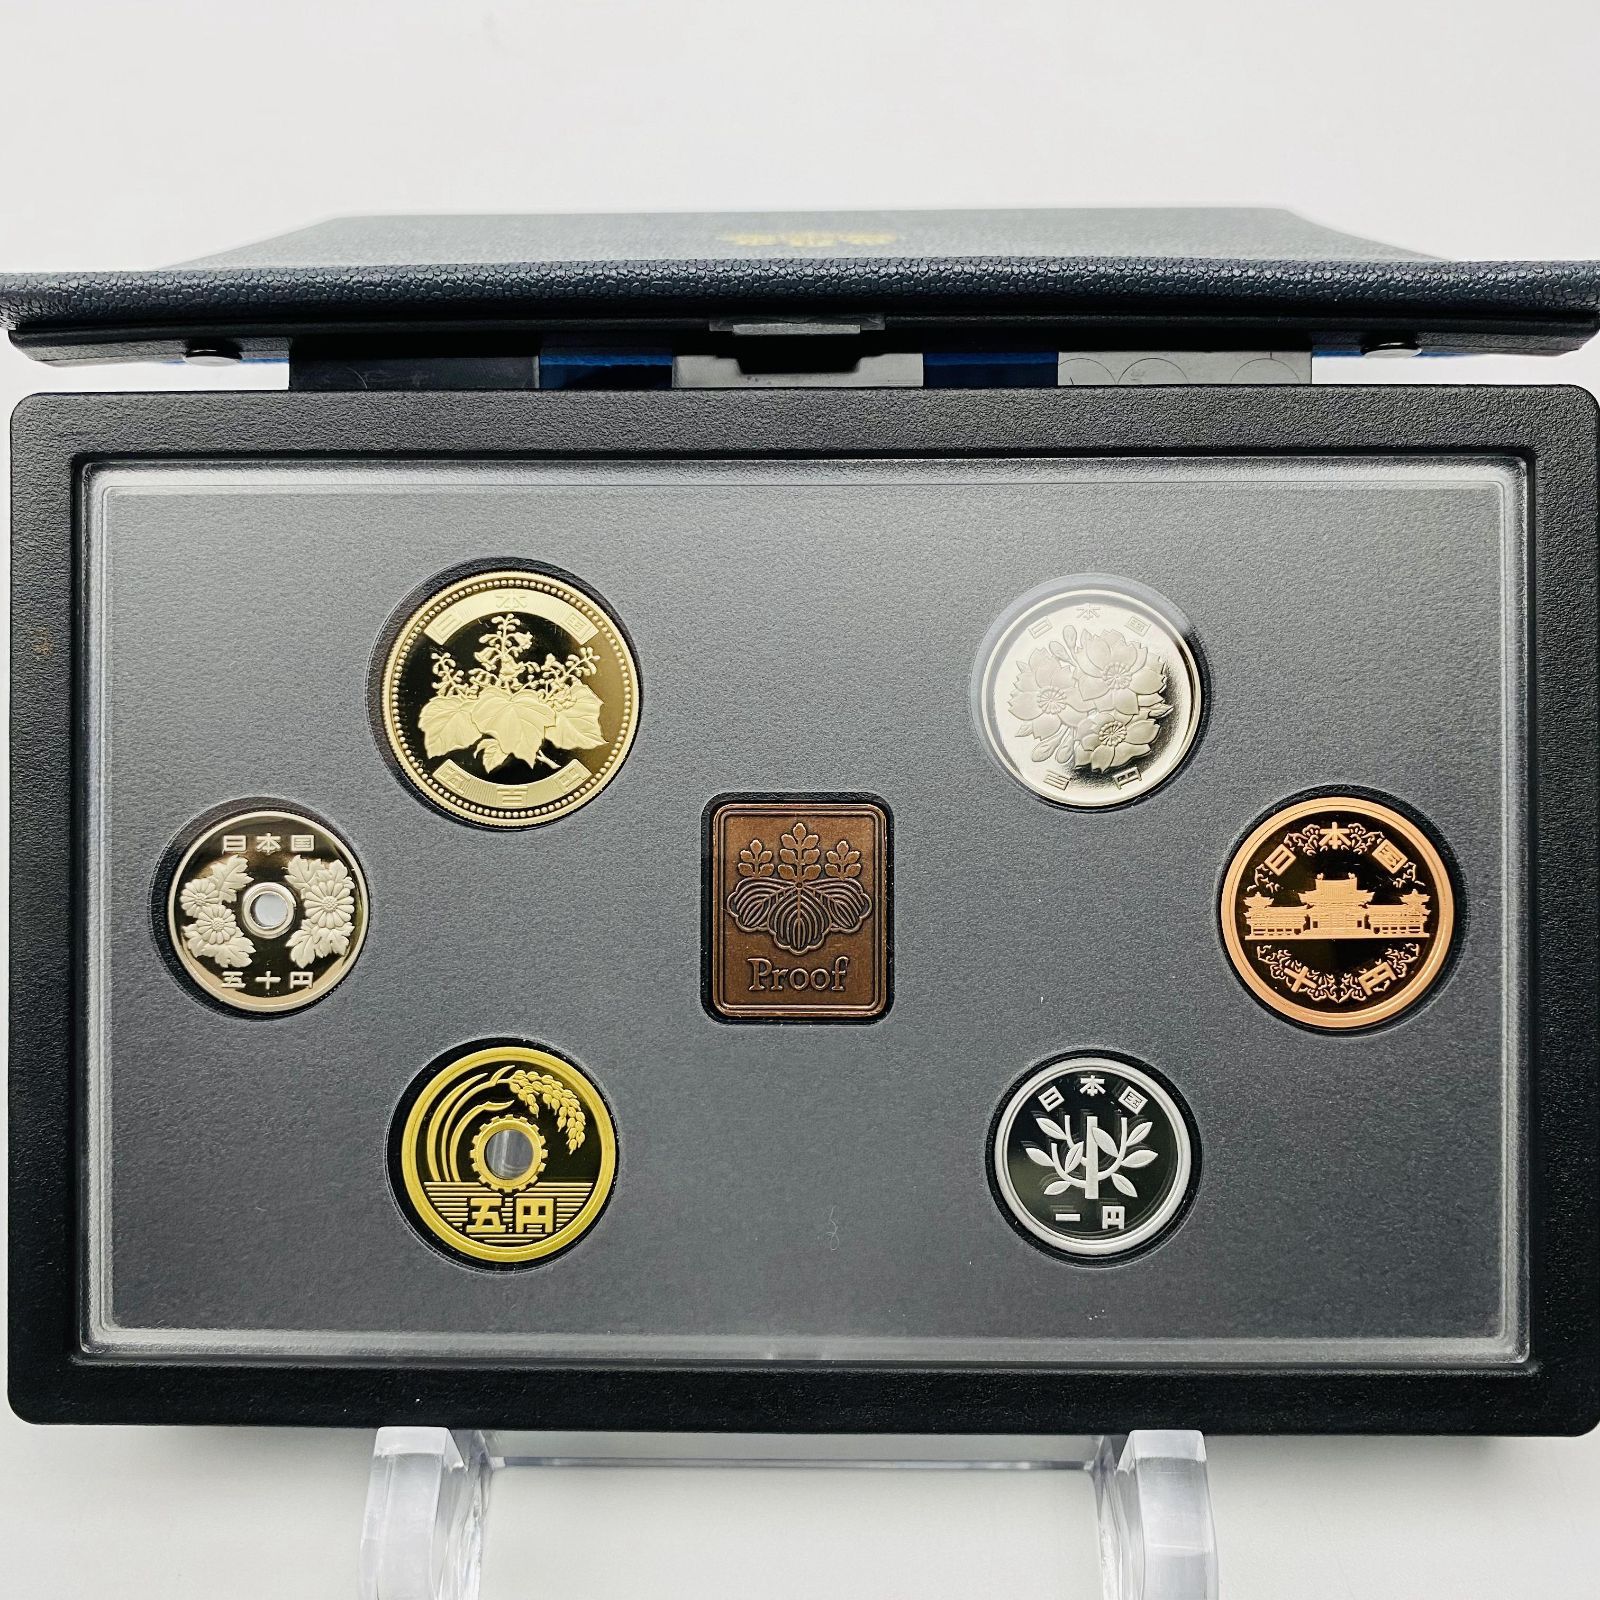 プルーフ貨幣セット 2003年 平成15年 額面666円 年銘板有 全揃い 通常